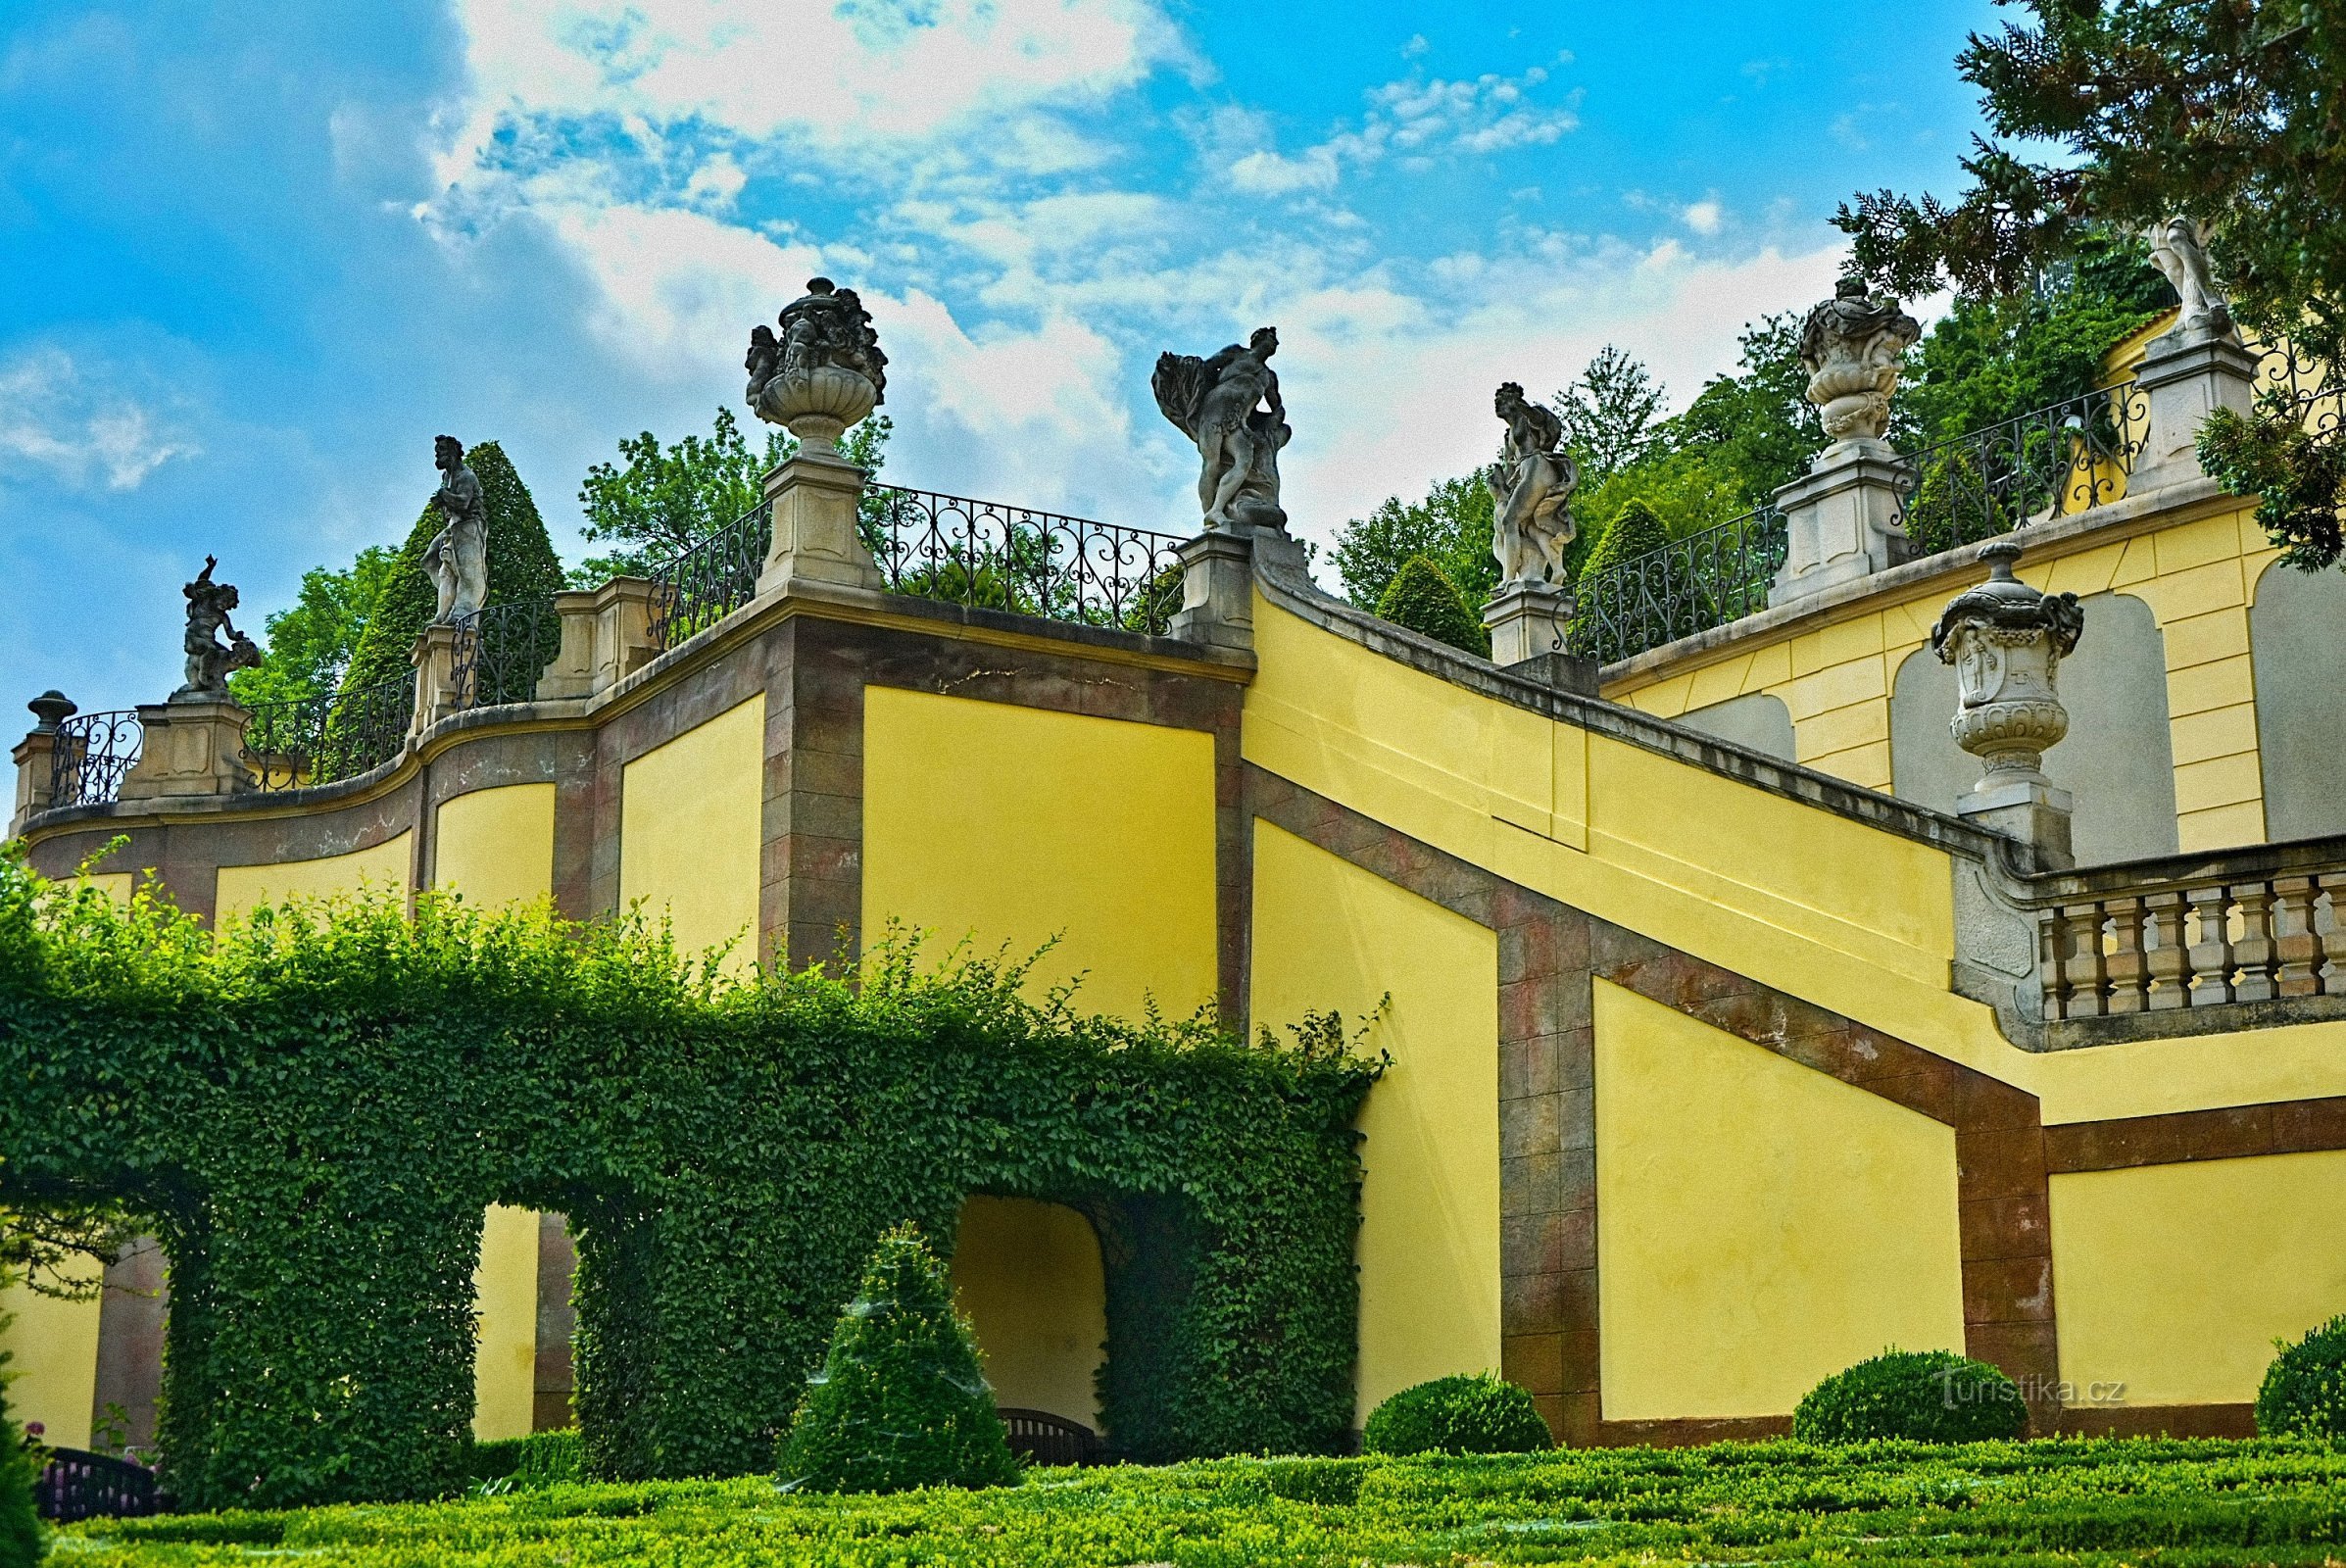 Vrtbovská сад з прекрасним видом на Прагу